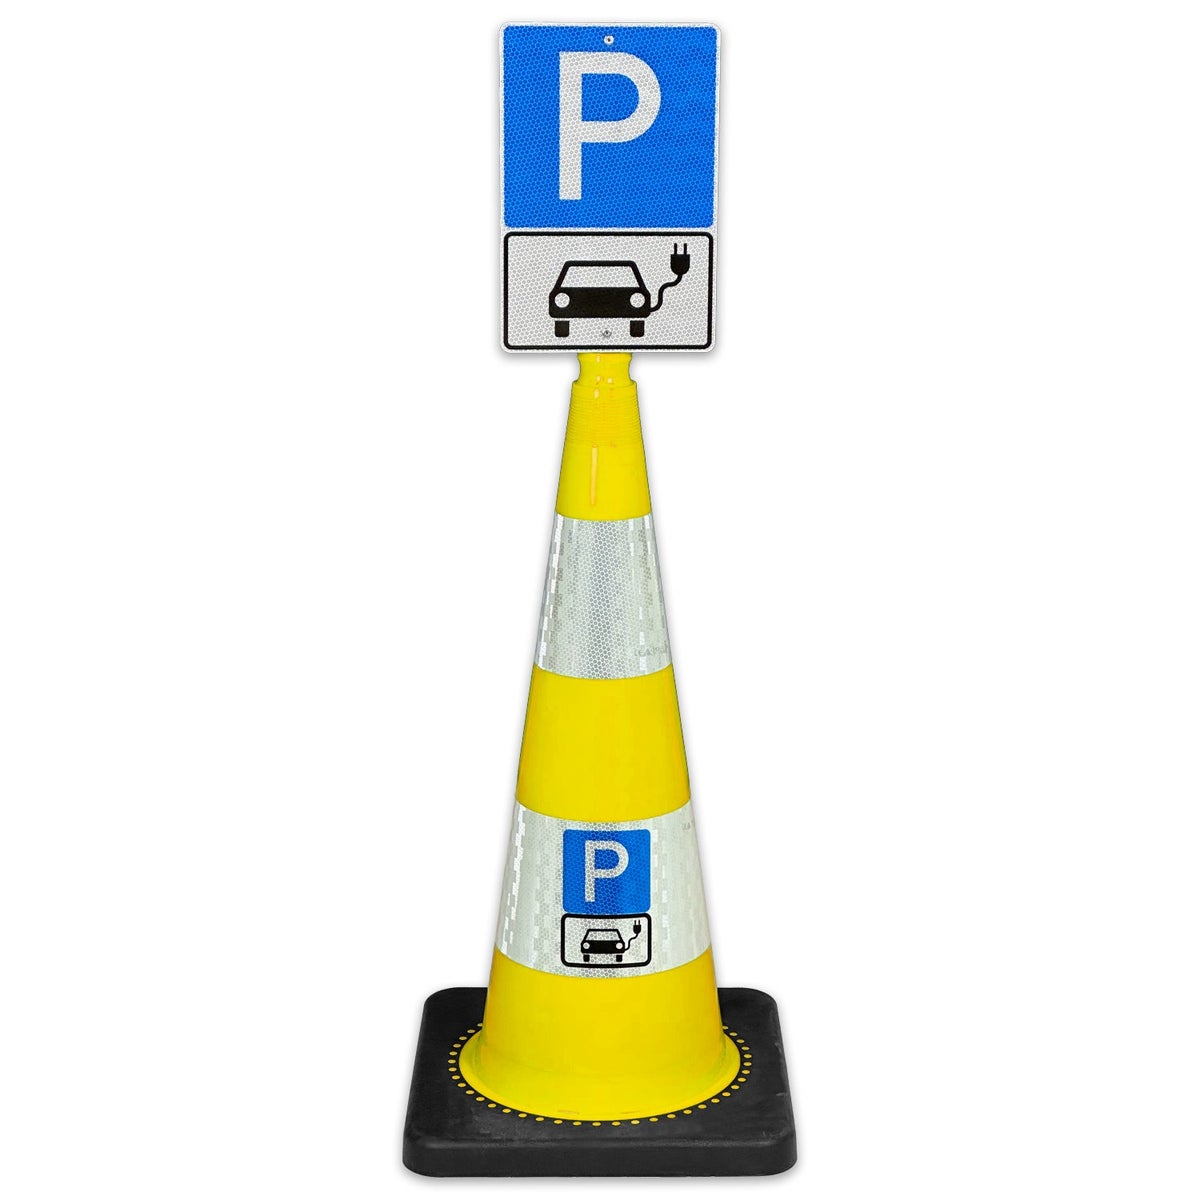 Leitkegel FLEX 75cm hoch mit Schild 30 x 20cm Parkplatz nur für Elektroautos / mit reflektierender Folie und Hinweisschild / Leitkegel gelb